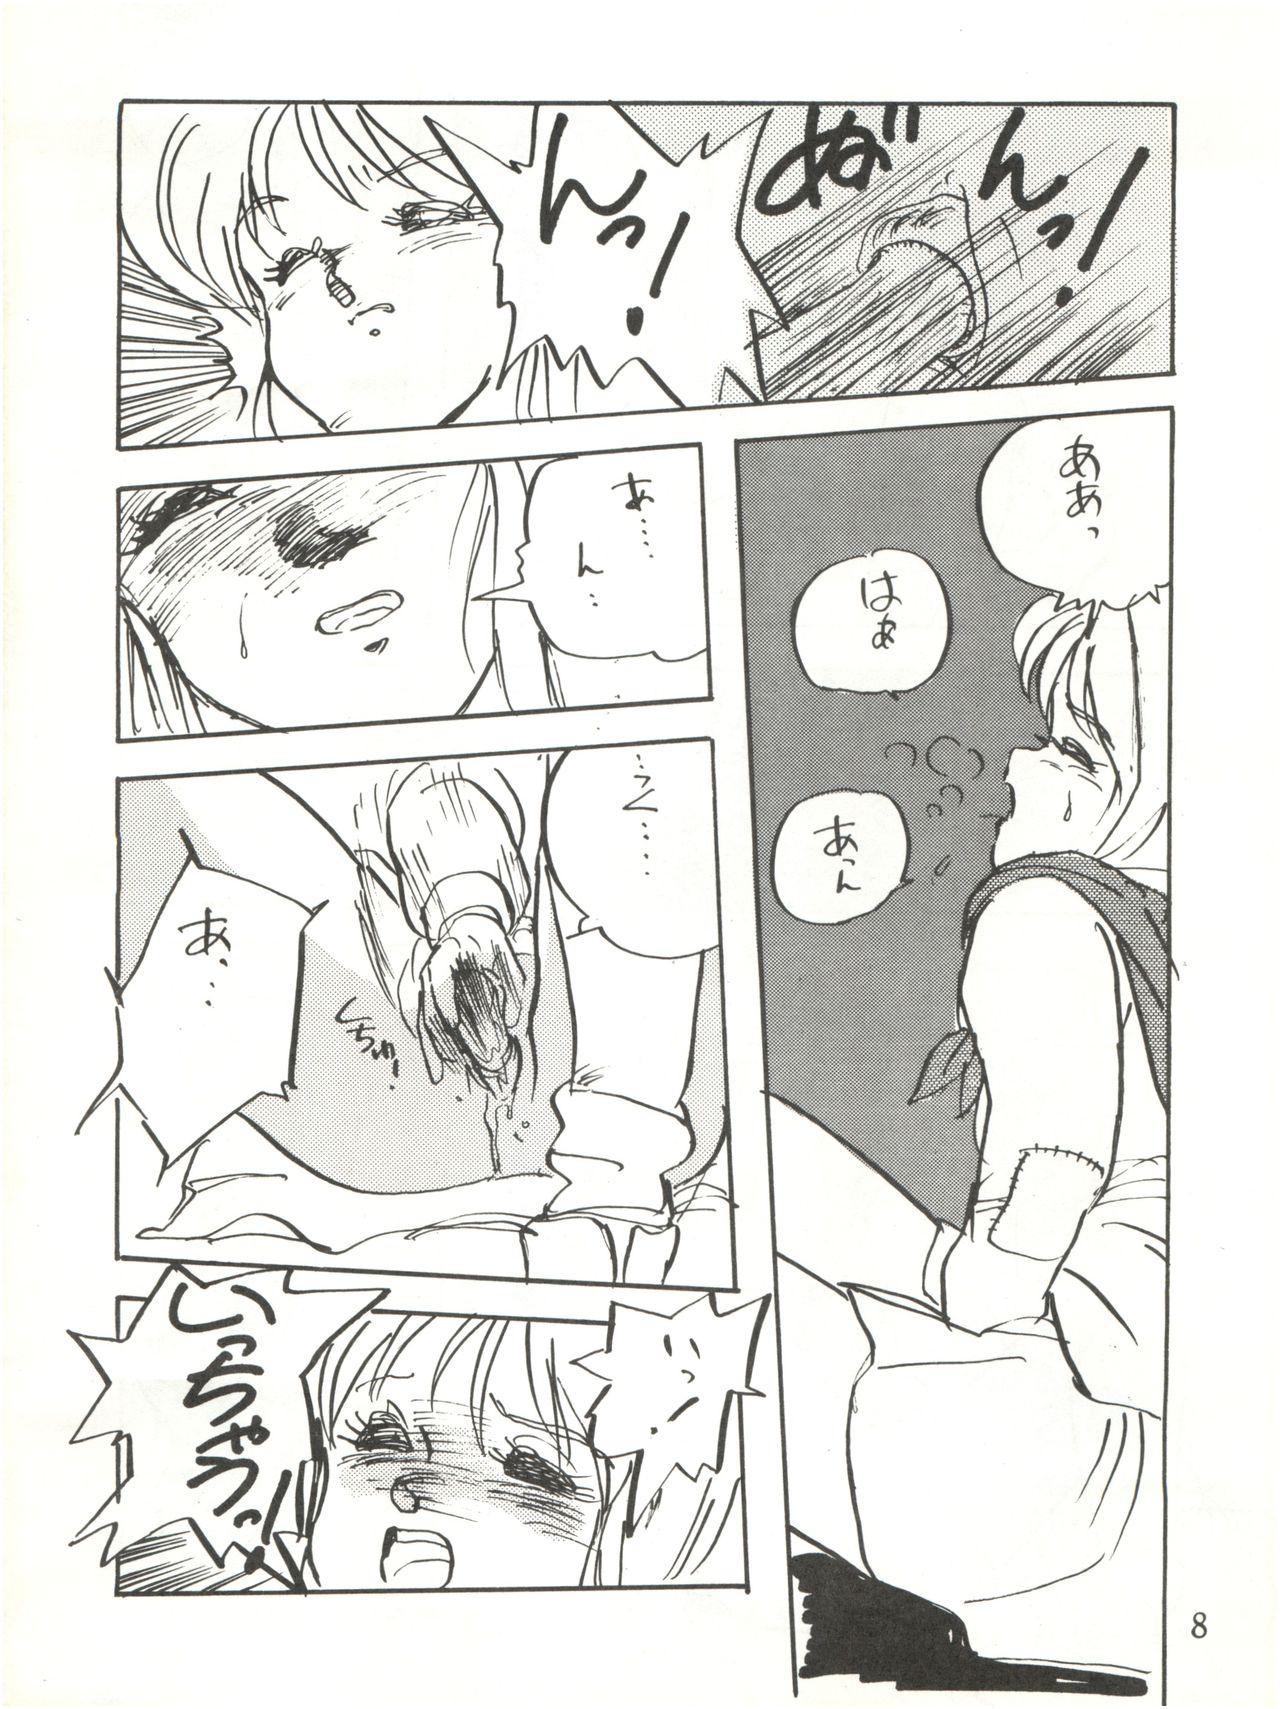 Rebolando Waku Waku Elpeo Land PII - Gundam zz Prostituta - Page 8